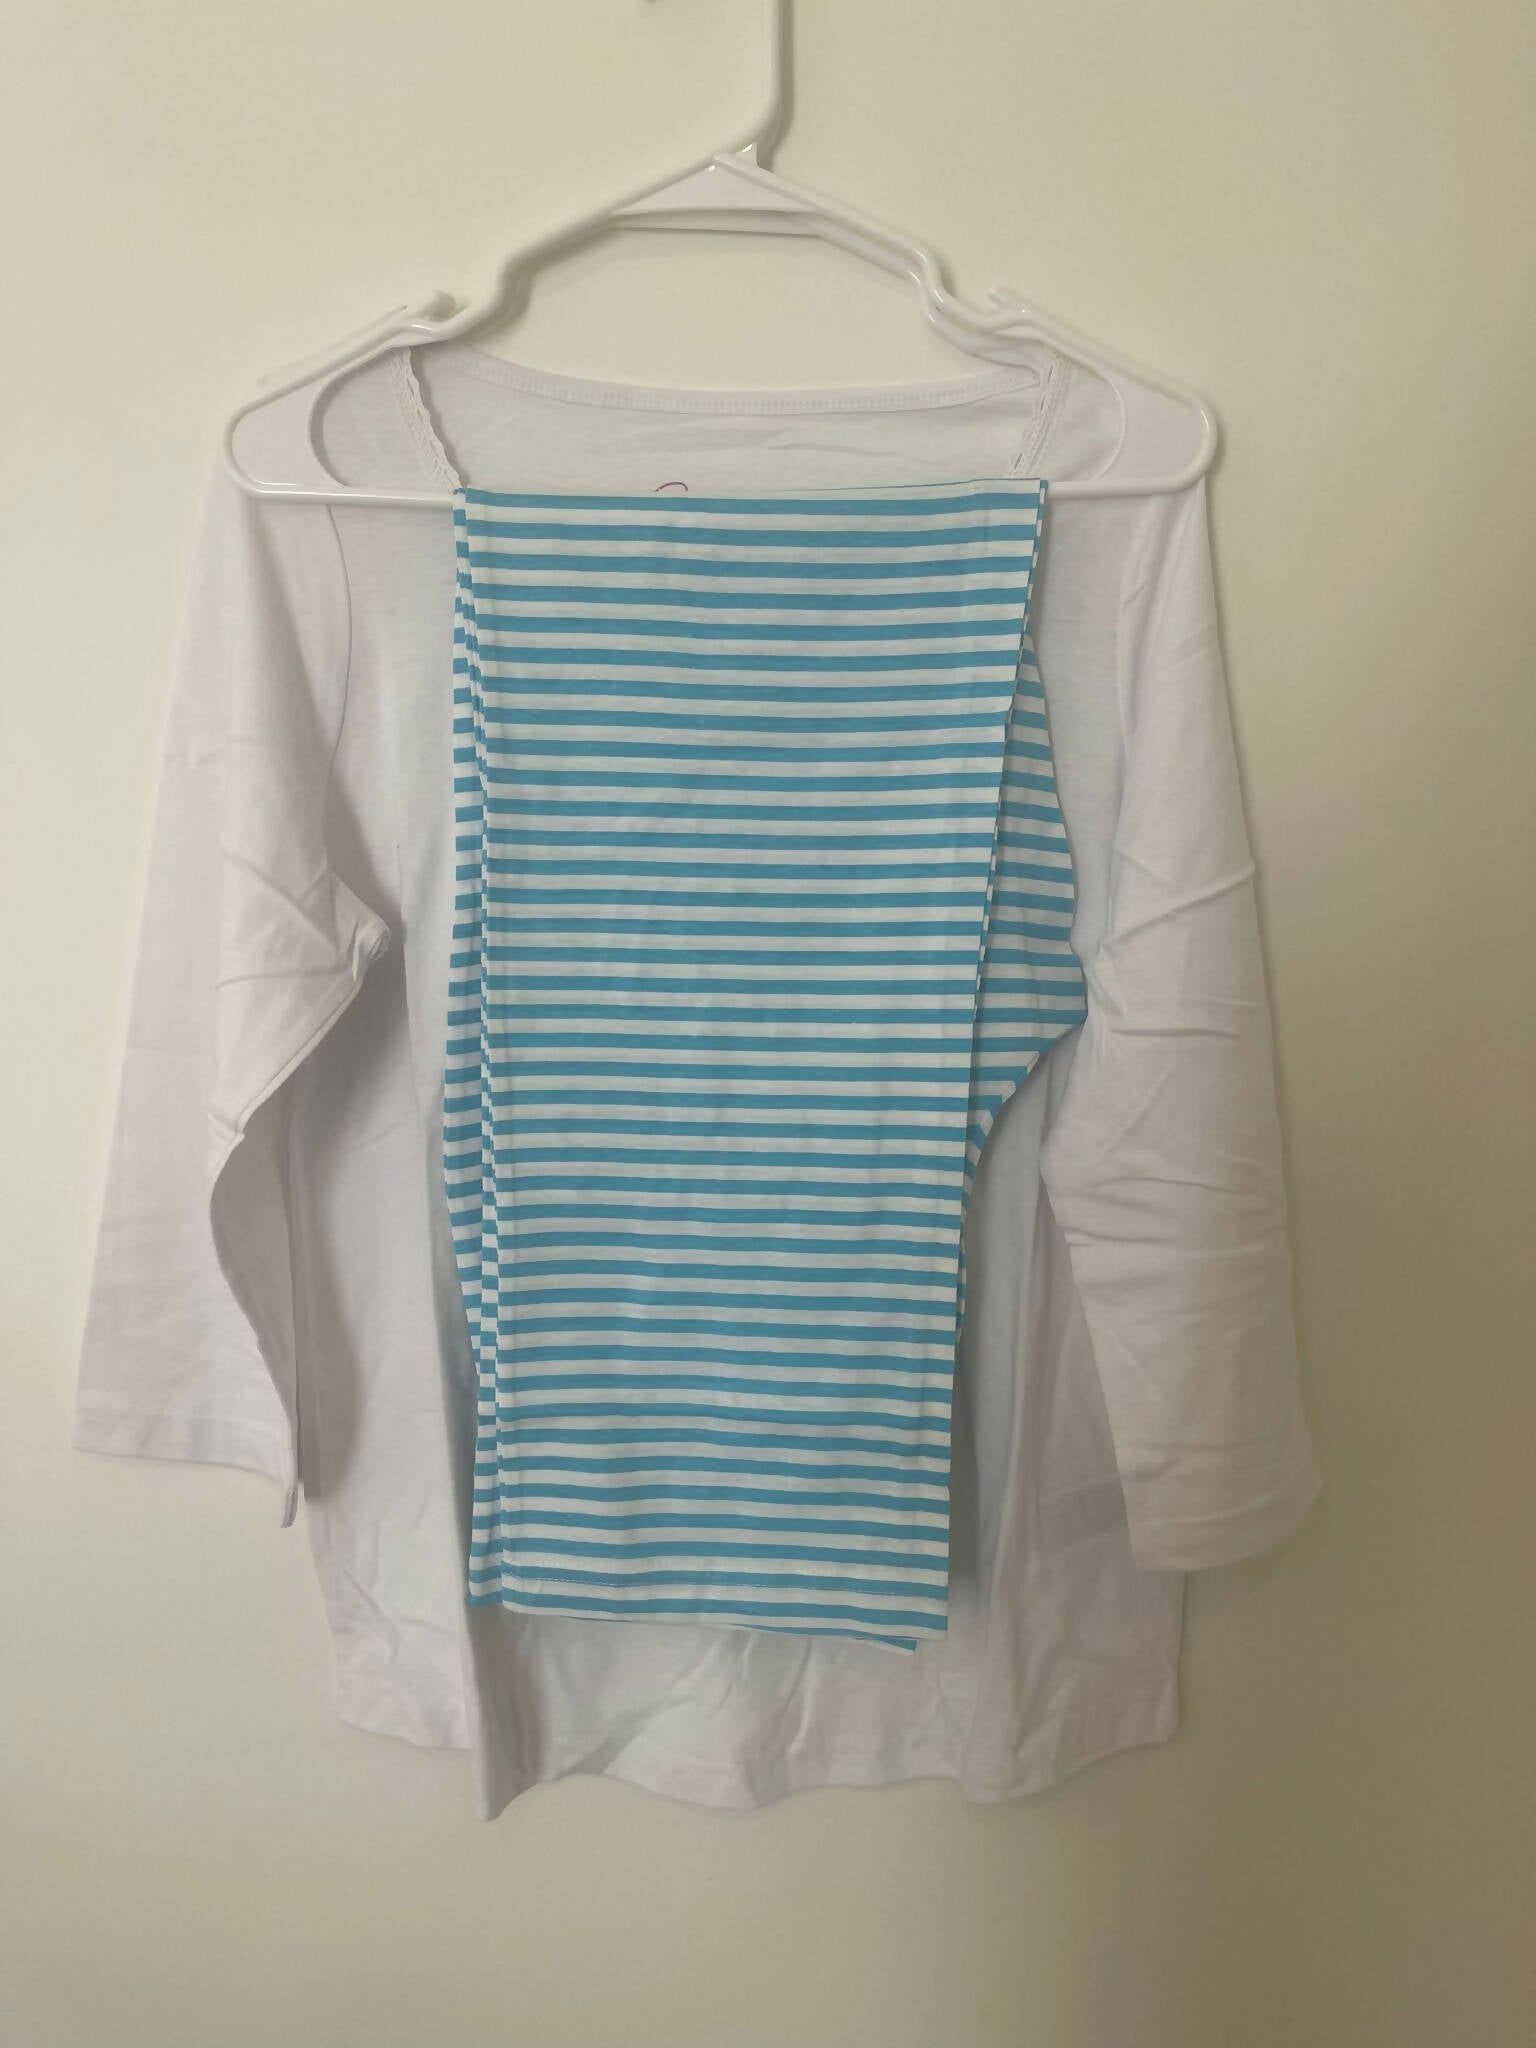 Zenith | White Blue PJ Sets (Size: Small, 8/10) | Women Loungewear & Sleepwear | Brand New